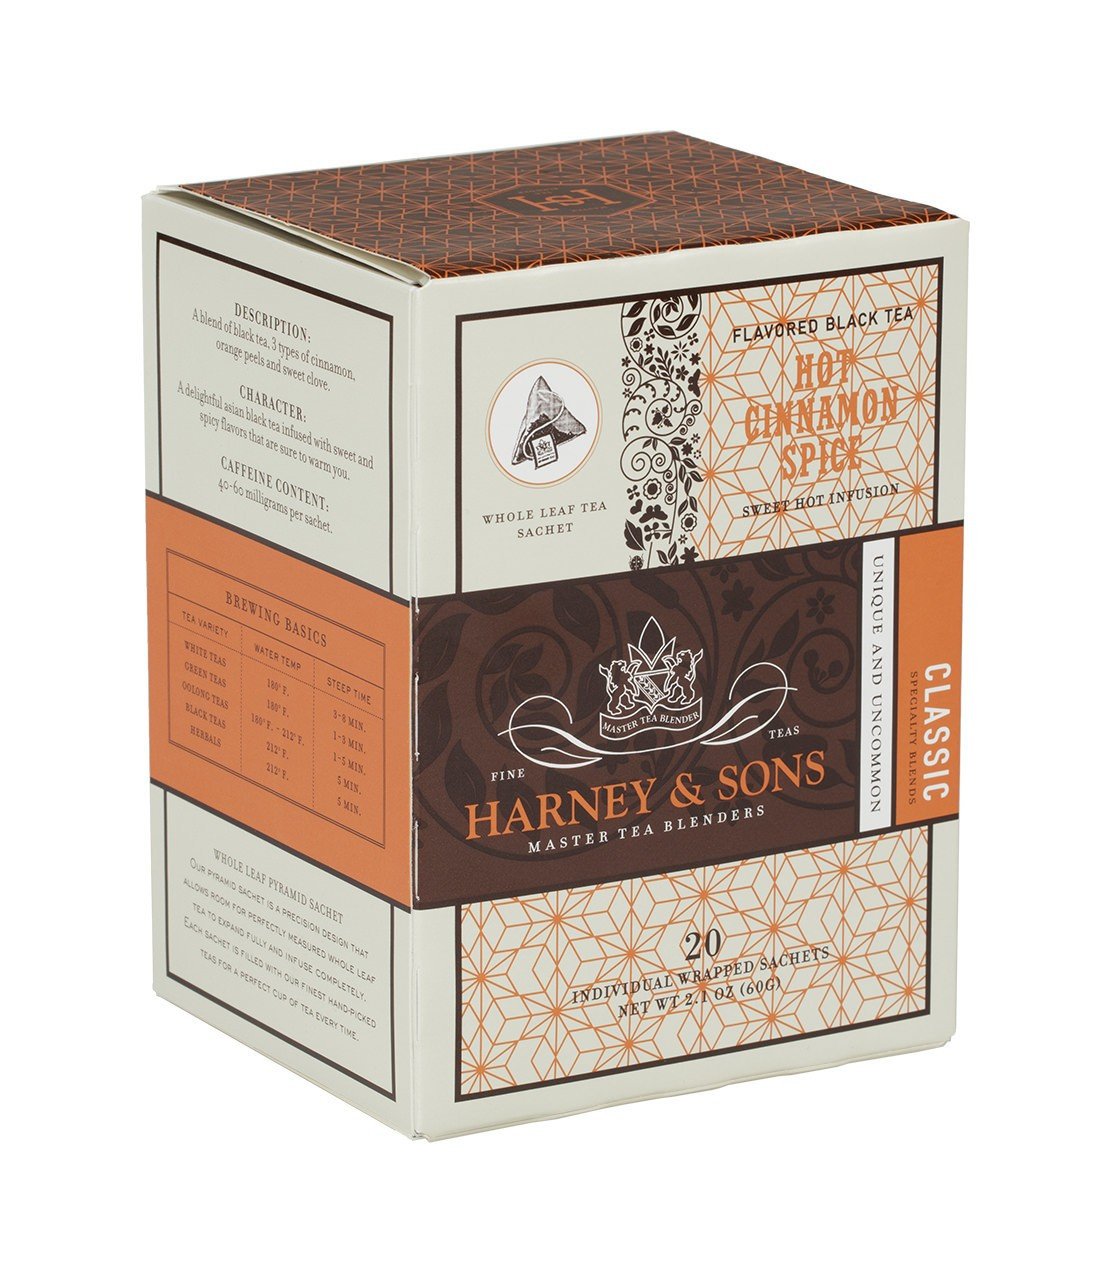 Hot Cinnamon Spice Tea  20 Sachets - Harney & Sons Fine Teas